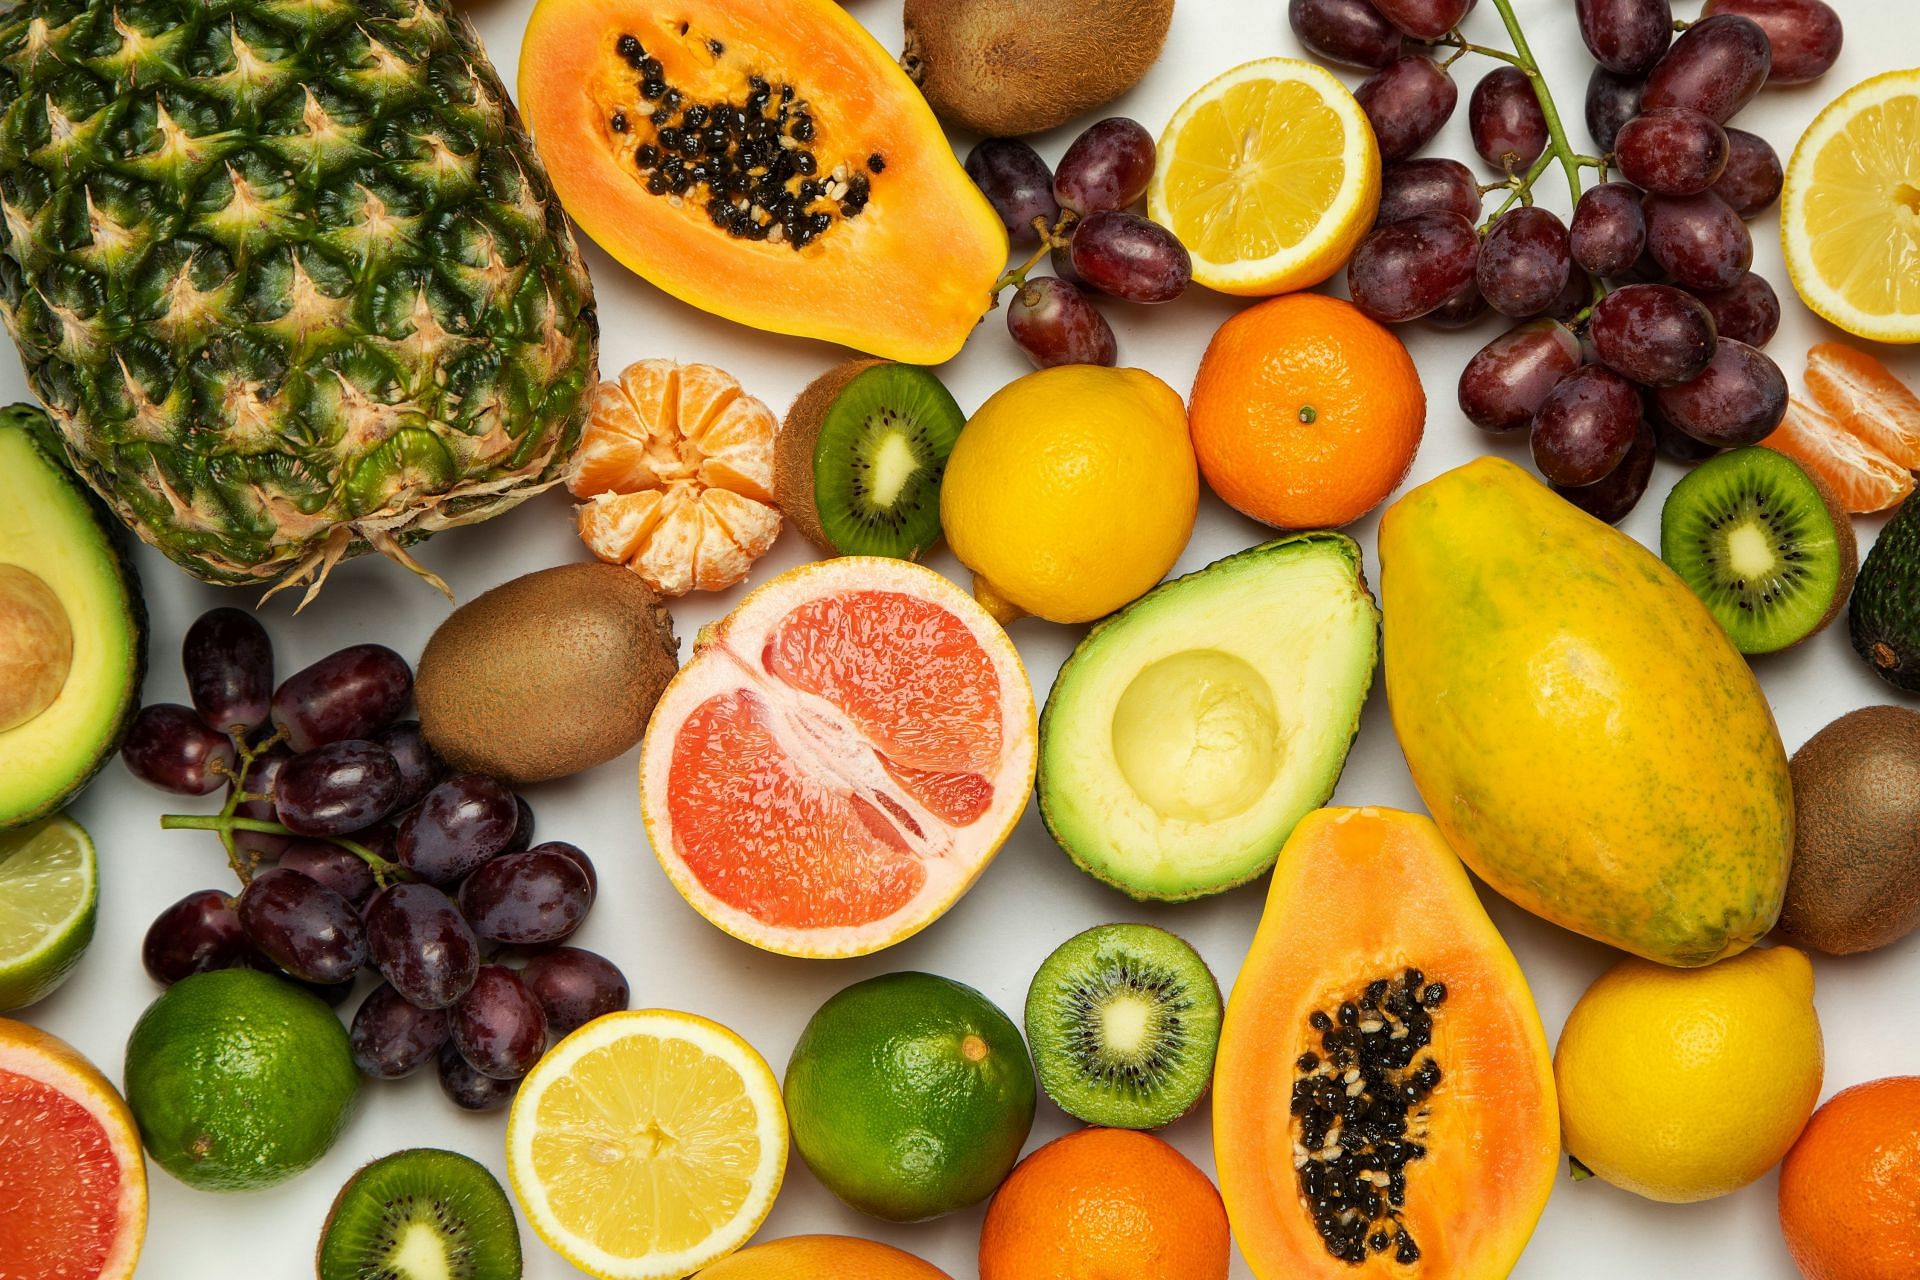 Fruits to avoid (Image via Unsplash/Julia)